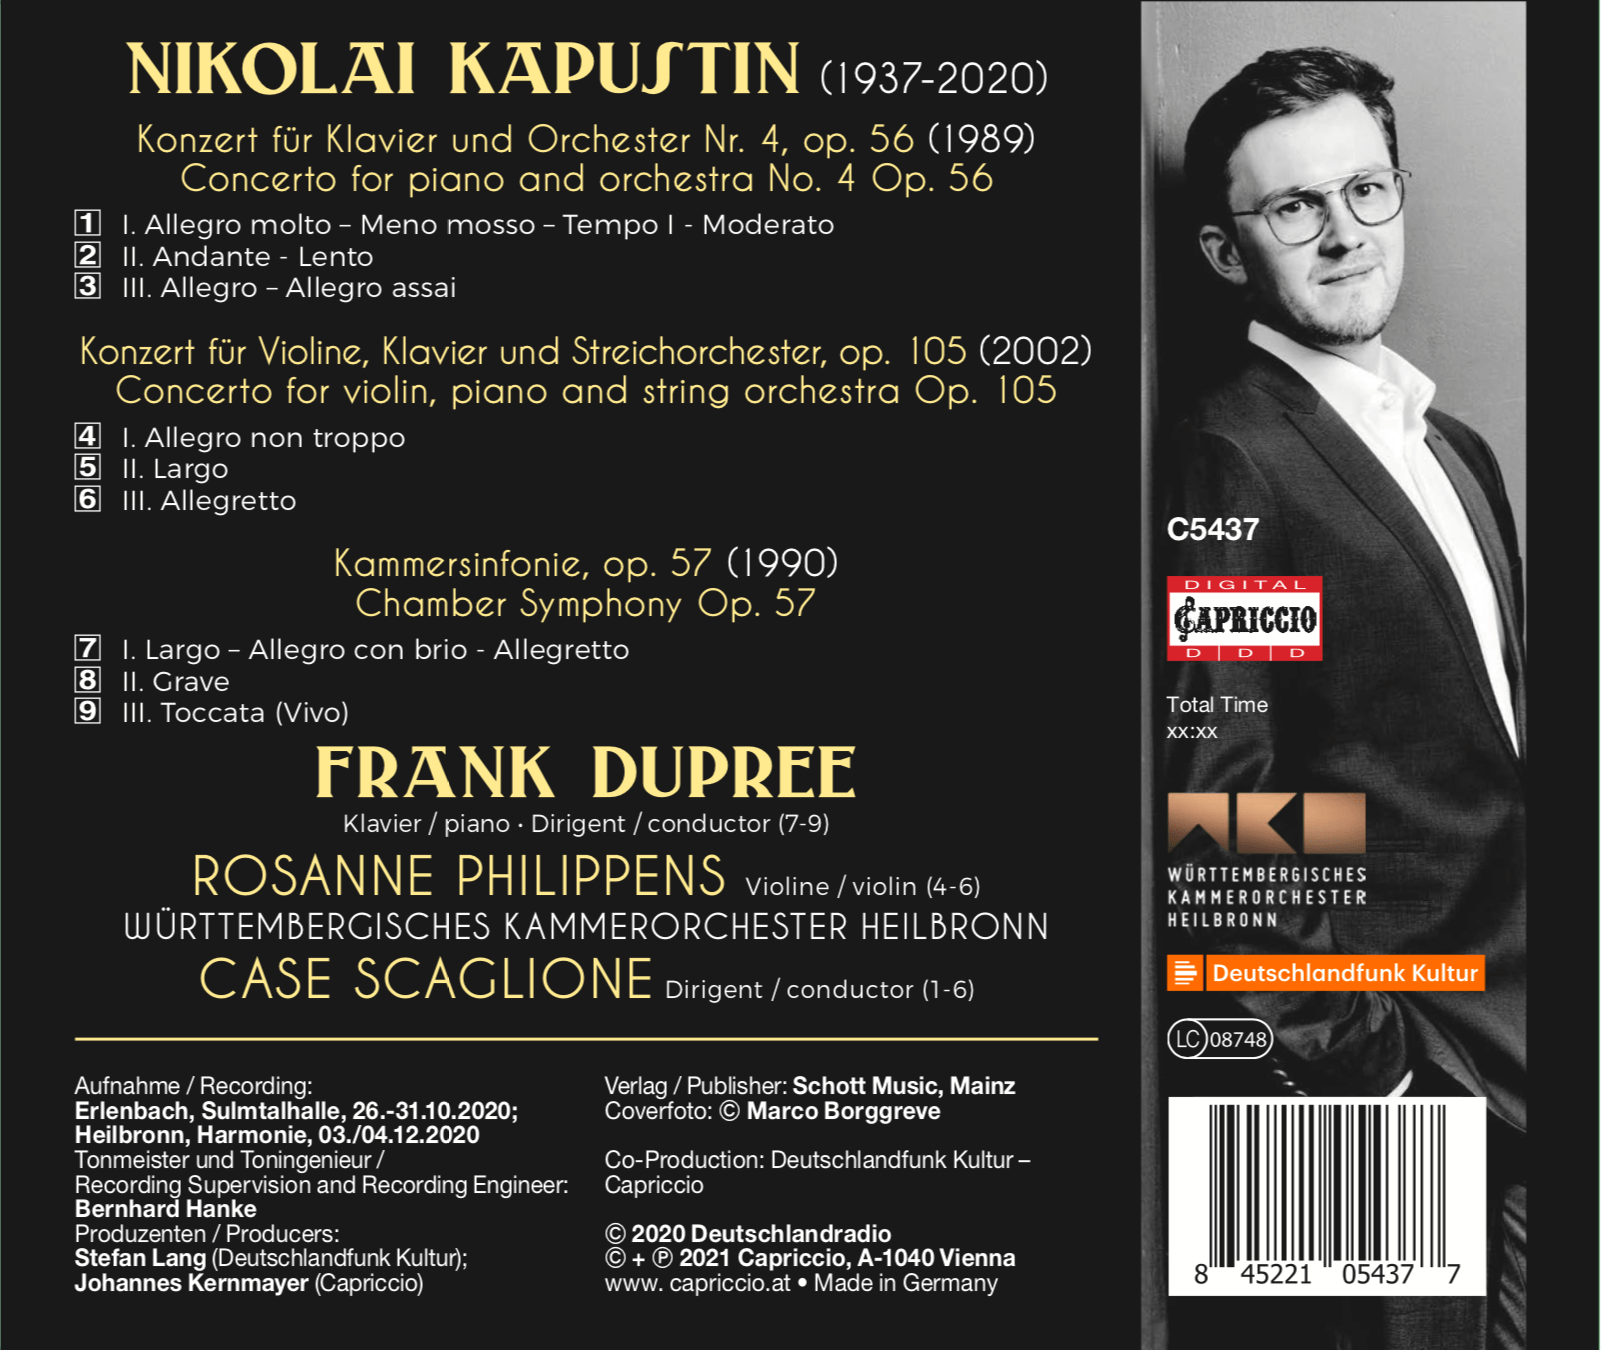 CD-Cover-Kapustin-back.png